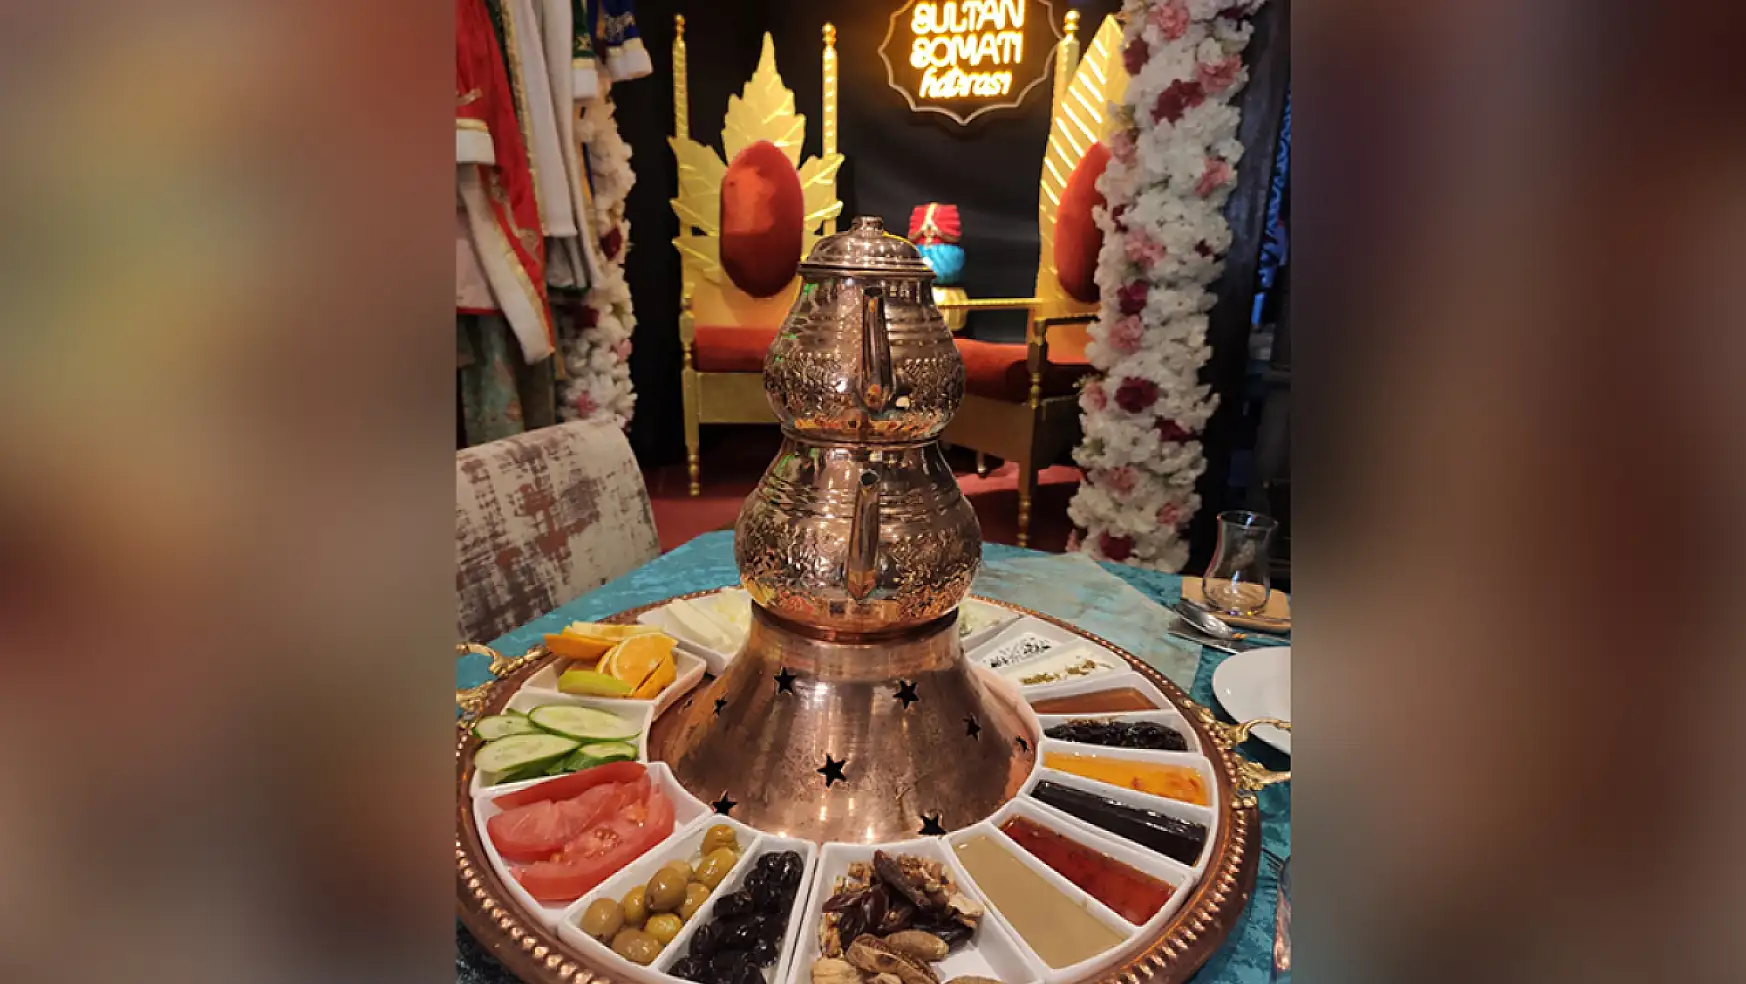 Sultan Somatı: Konya'da tarihi bir yemek deneyimi